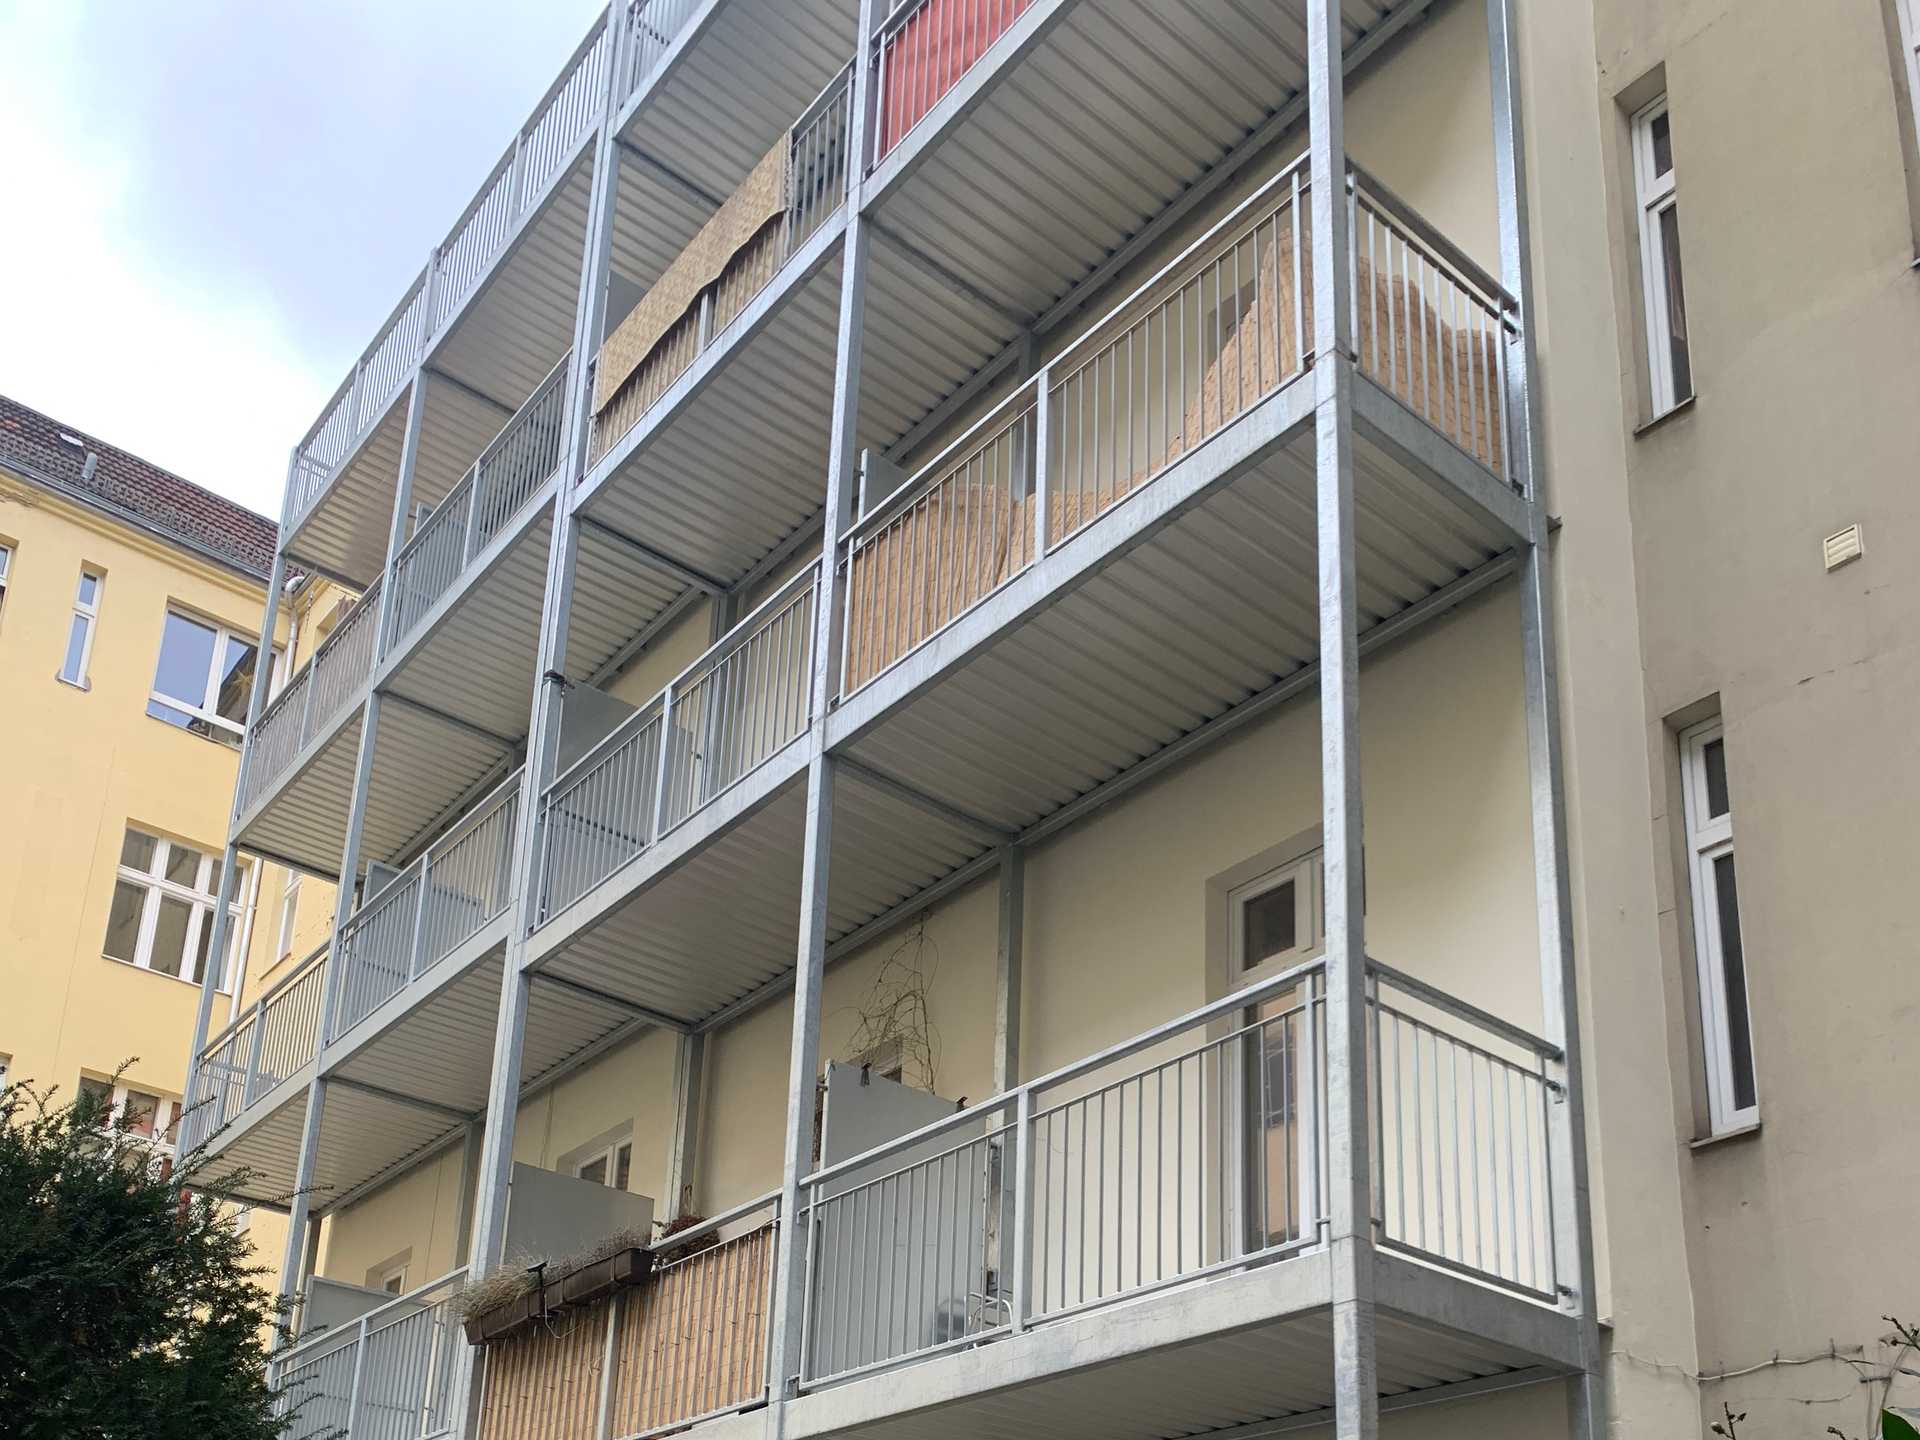 BS086 Neubau von 16 Balkonen